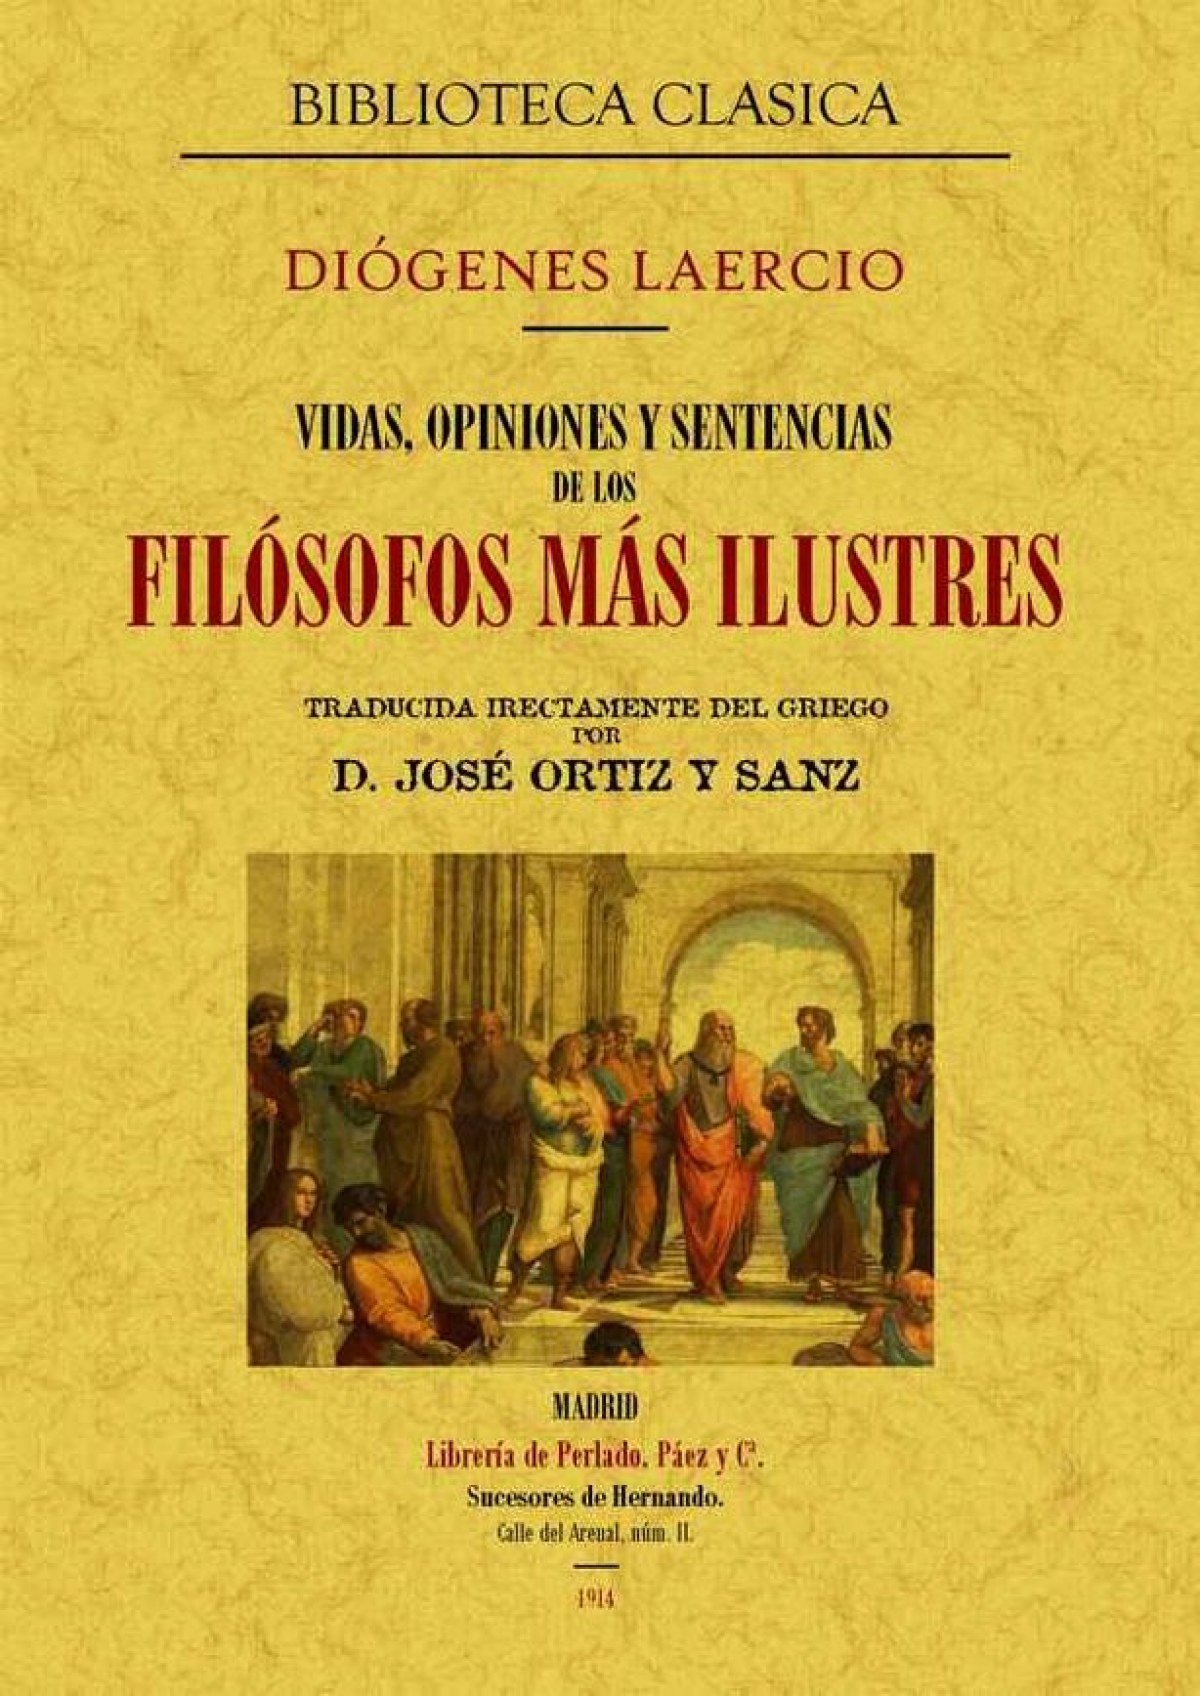 Vidas, opiniones y sentencias de los filósofos más ilustres - Laercio, Diógenes